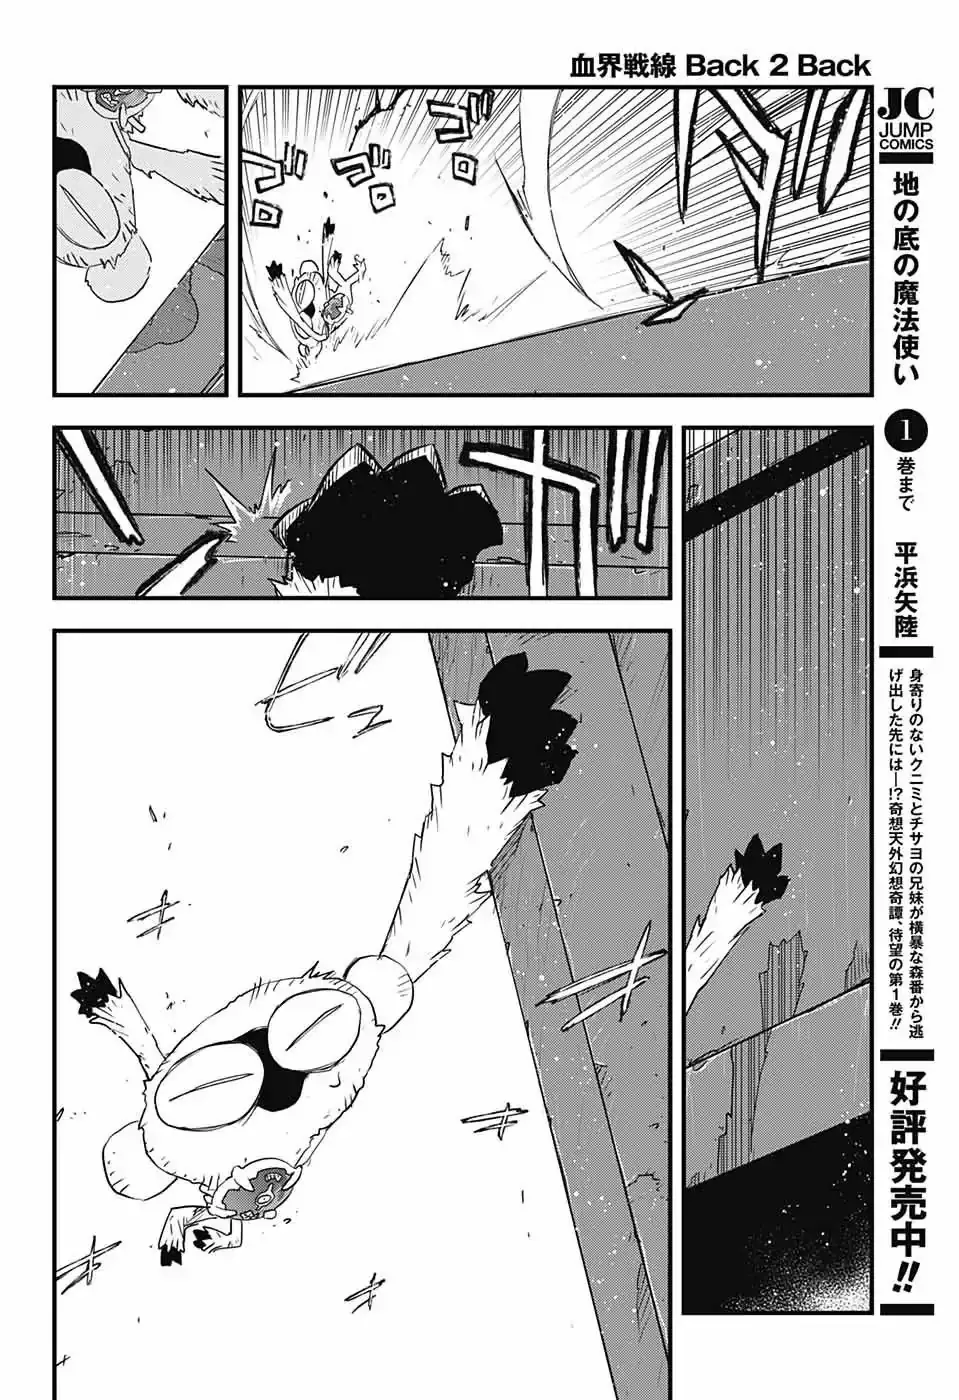 Kekkai Sensen - Back 2 Back - 15 page 48